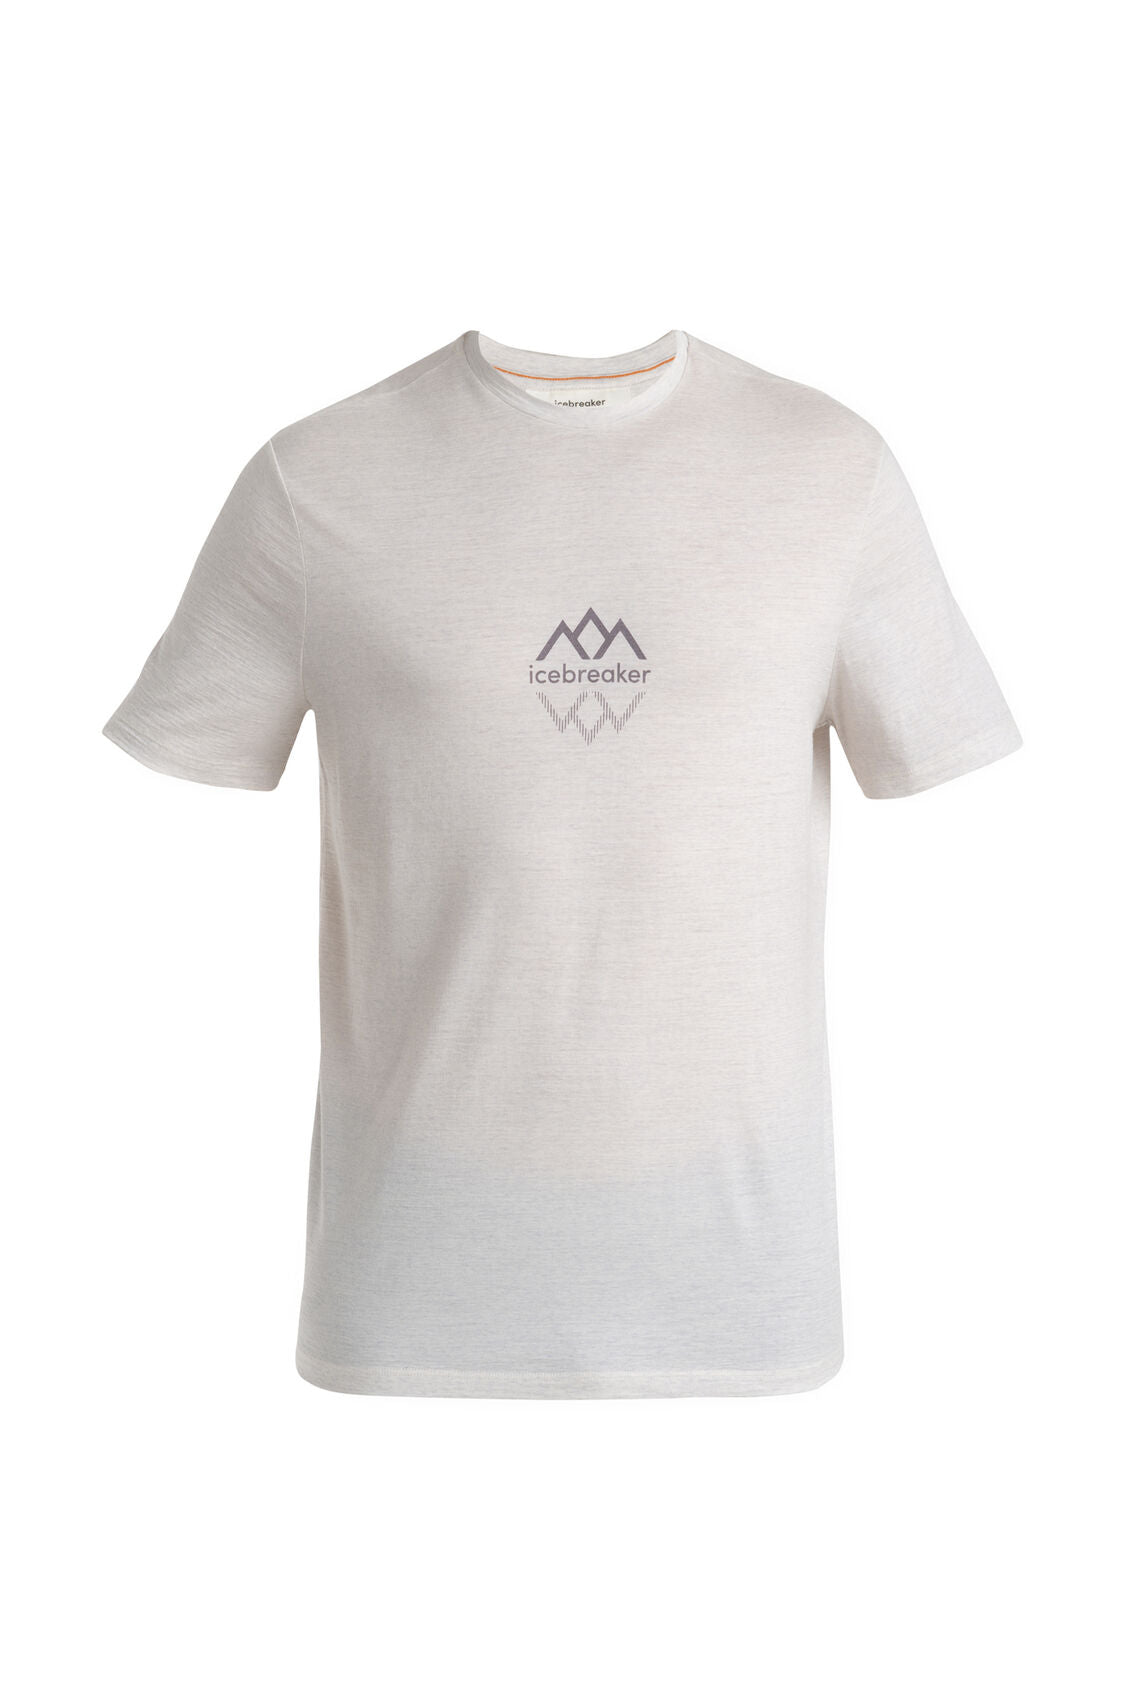 Men's Merino 150 Tech Lite III T-Shirt IB Logo Reflections